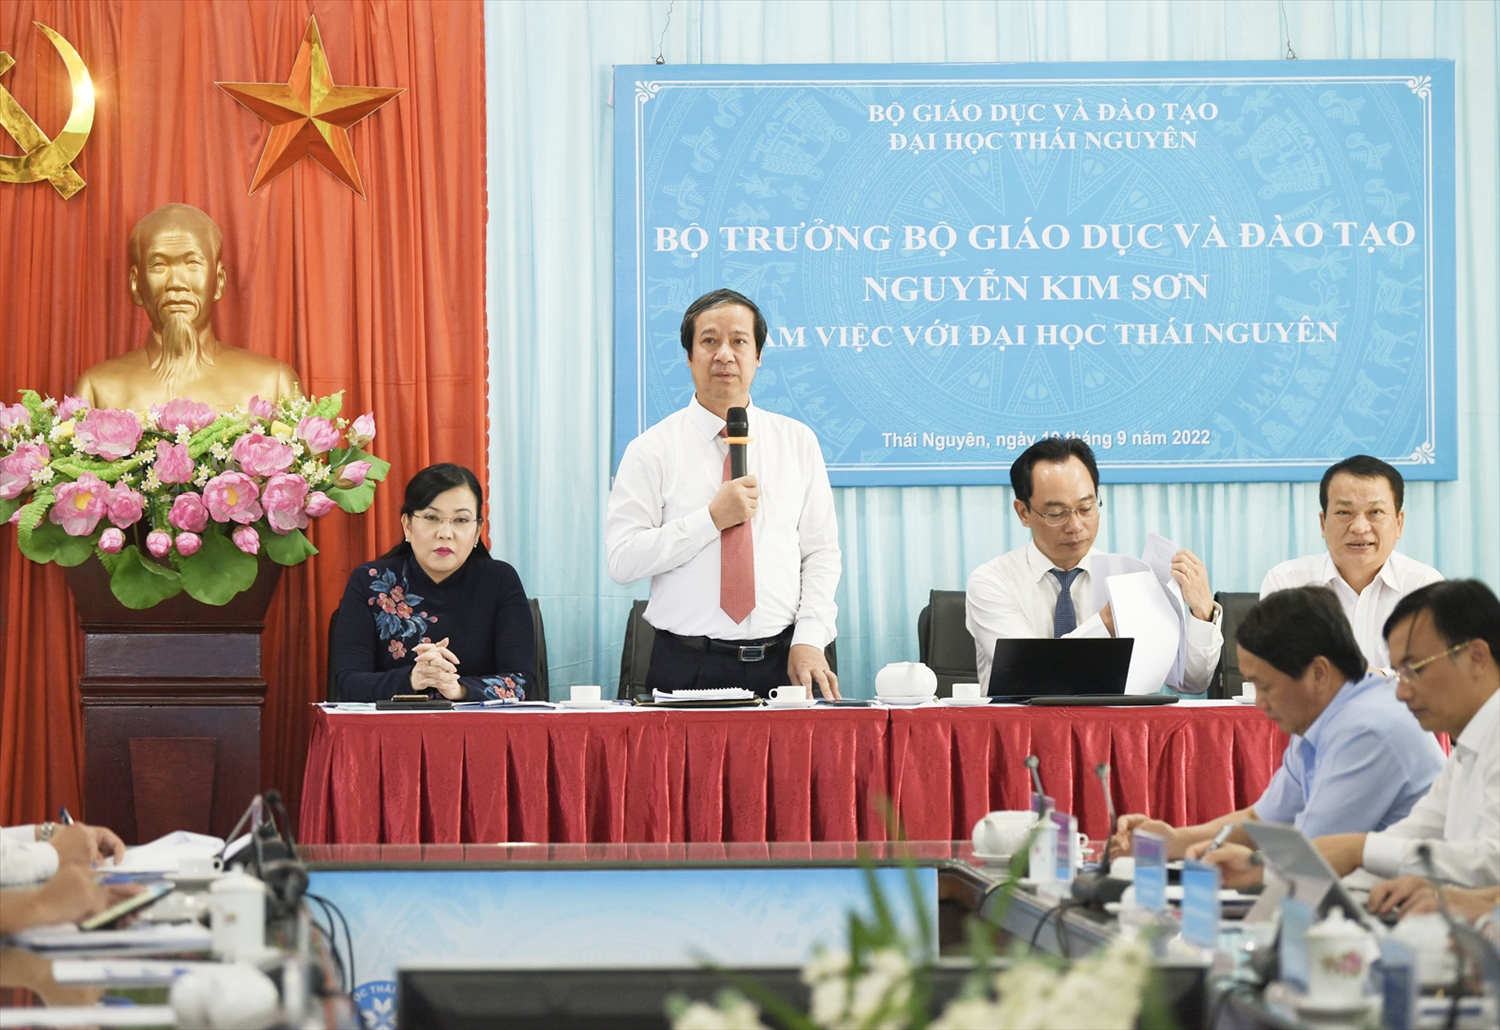 Bộ trưởng Bộ GD&ĐT Nguyễn Kim Sơn phát biểu tại buổi làm việc